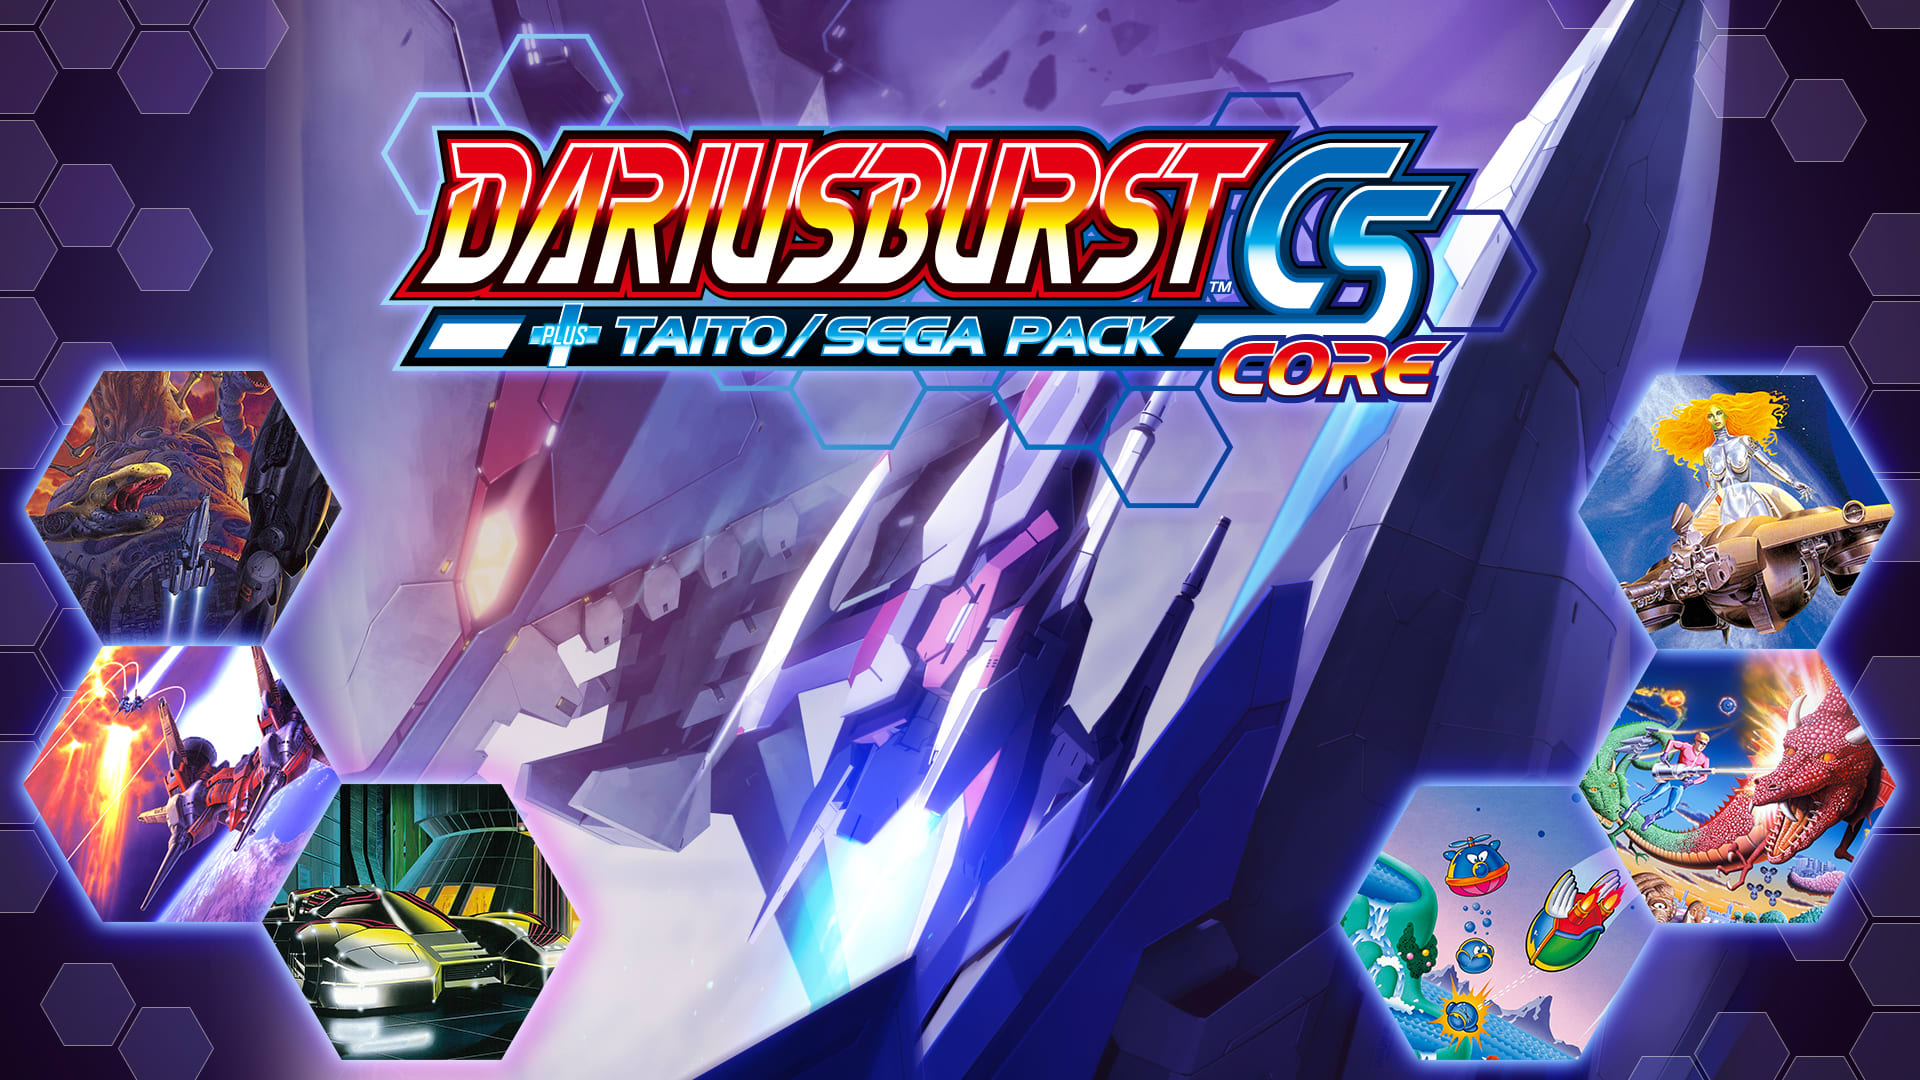 DARIUSBURST CS CORE + TAITO/SEGA Pack